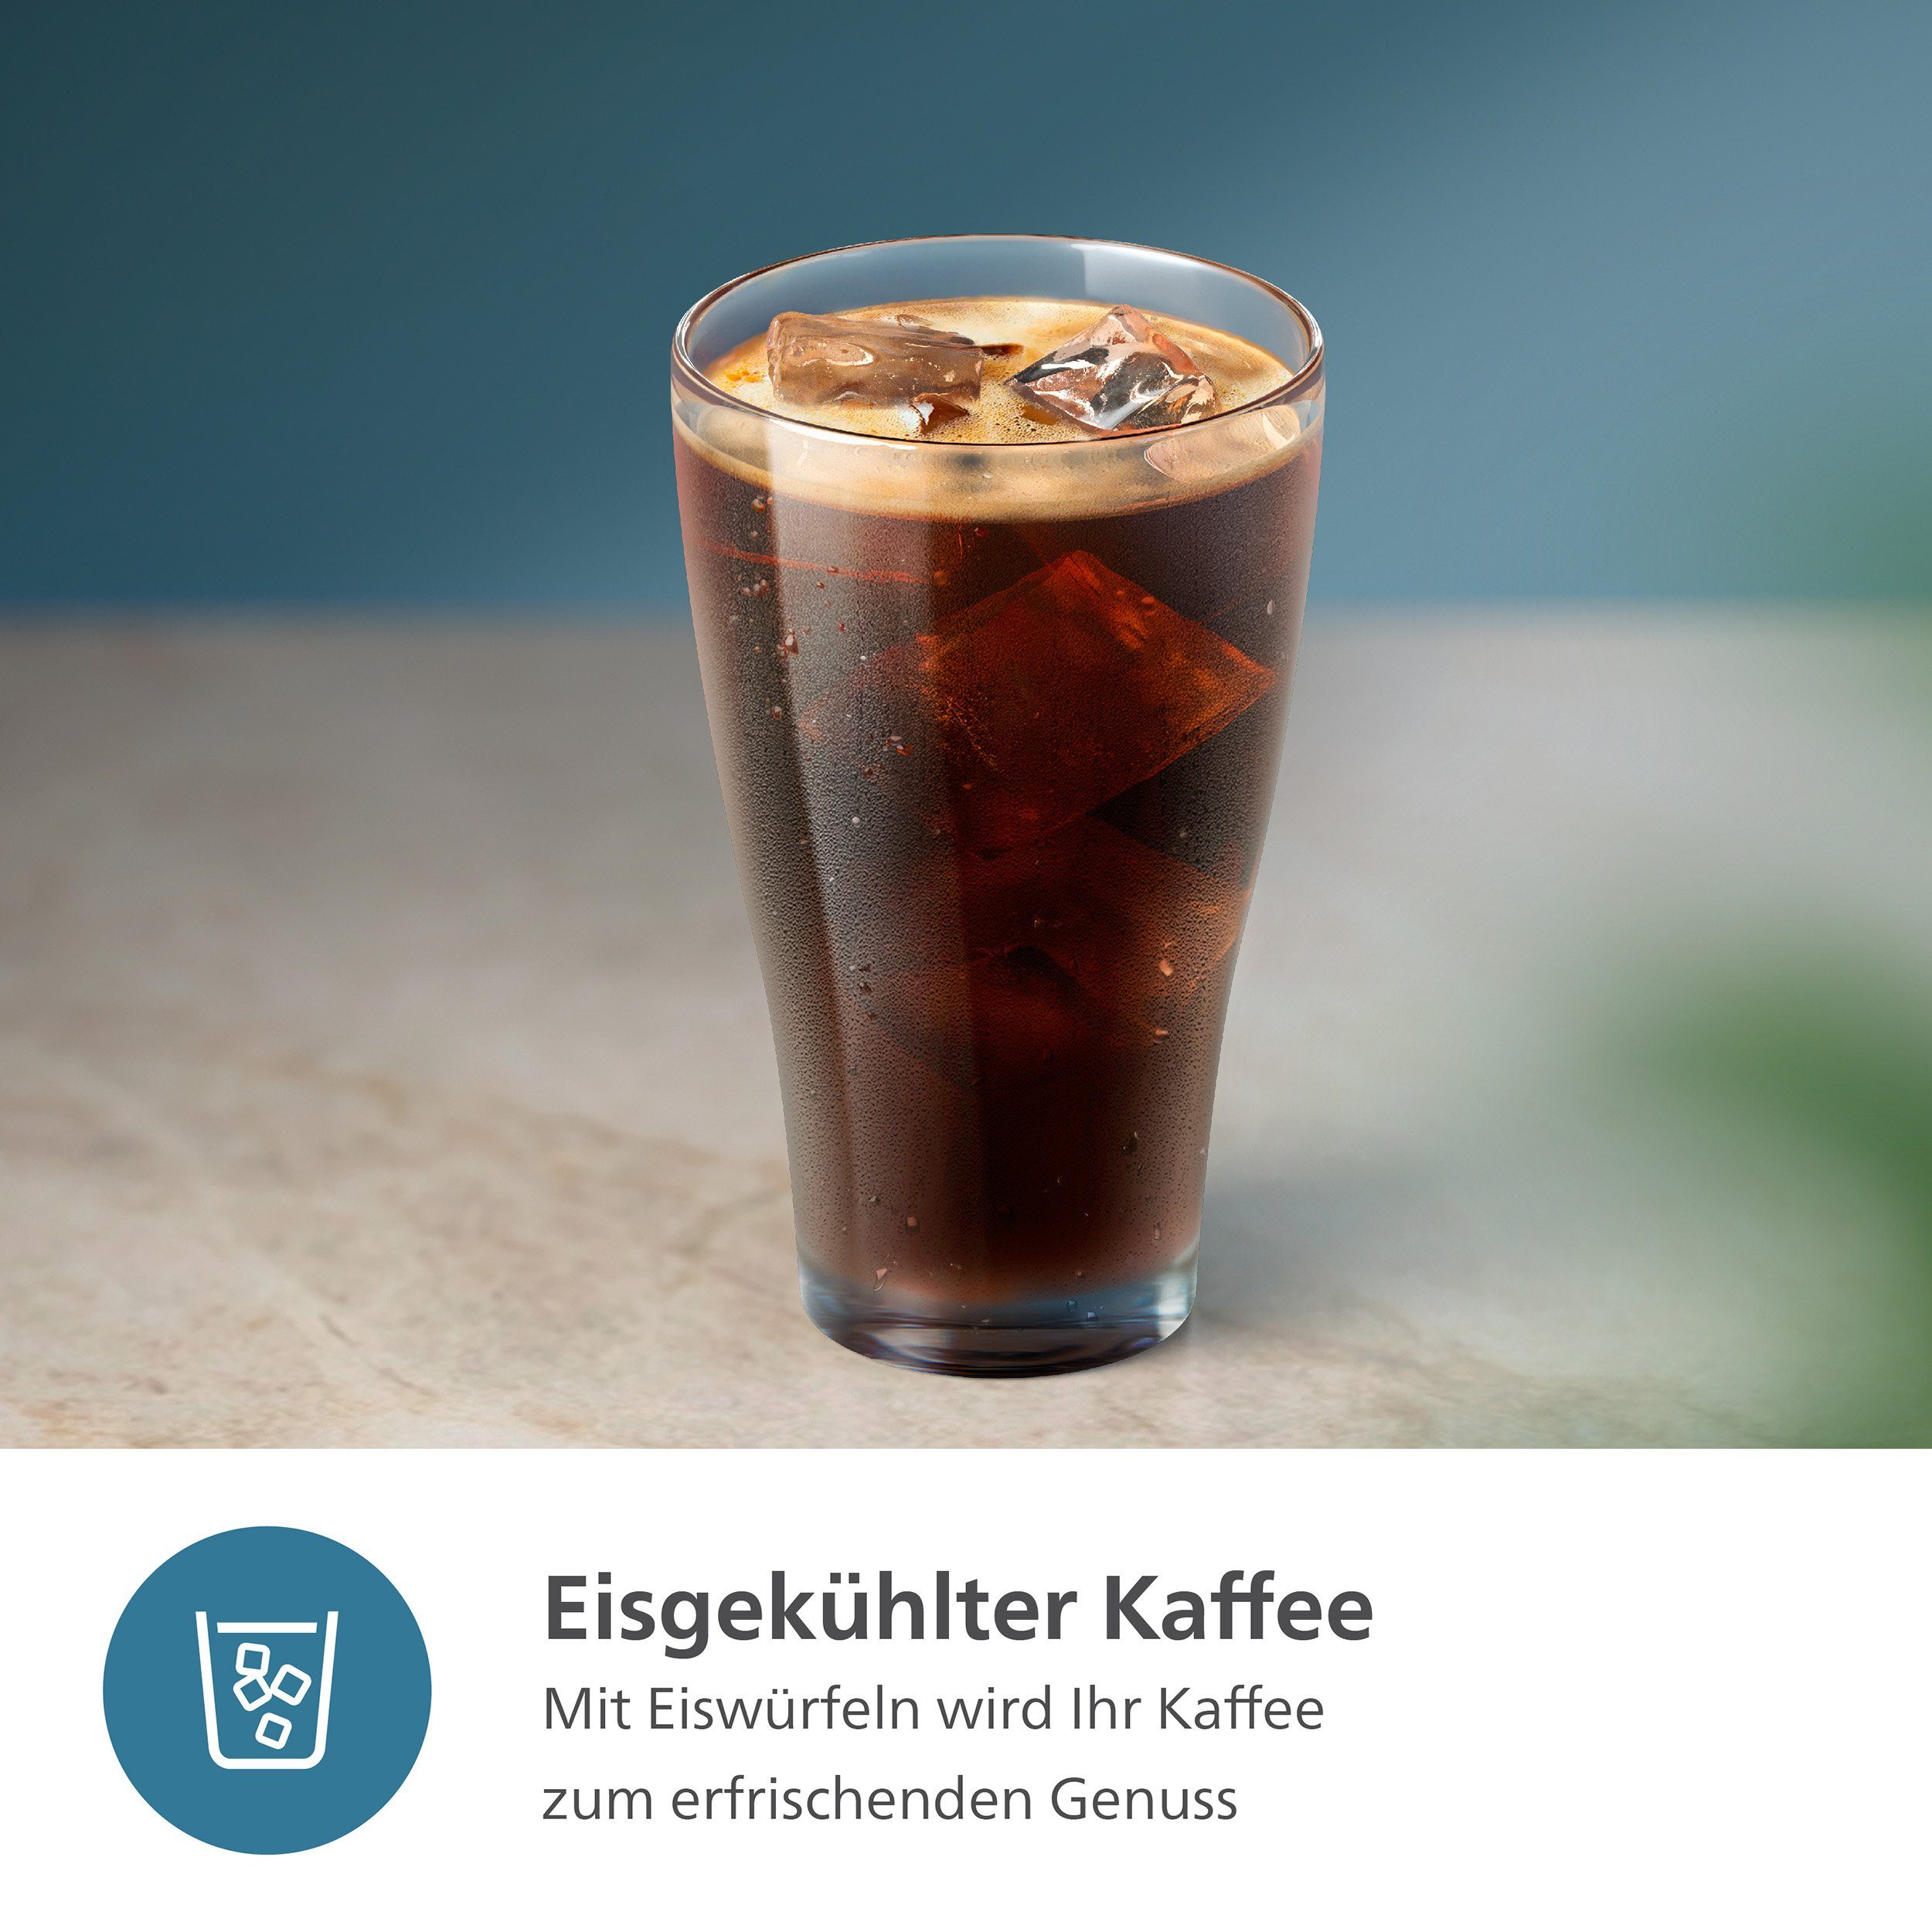 6 LatteGo-Milchsystem, Weiß/Schwarz Kaffeespezialitäten, Philips 3300 EP3343/50 Kaffeevollautomat mit Series,